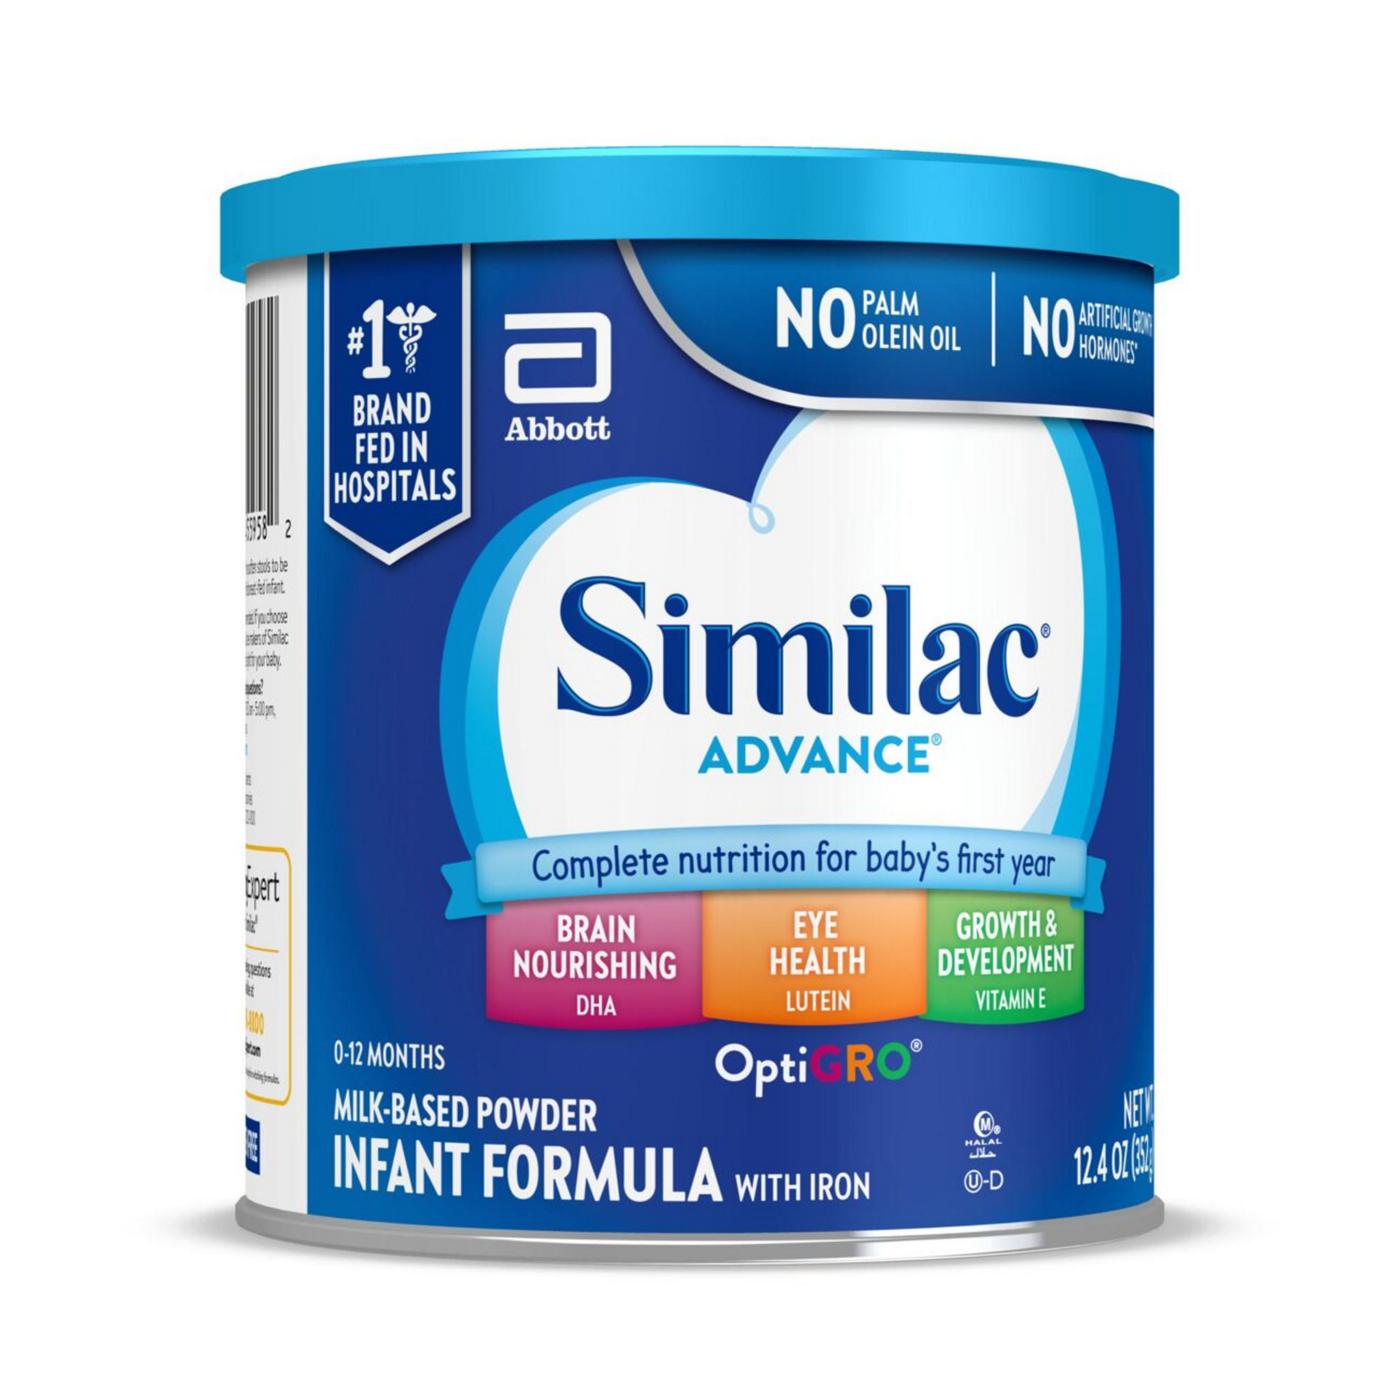 Similac Advance Milk-Based Powder Infant Formula with Iron; image 8 of 10